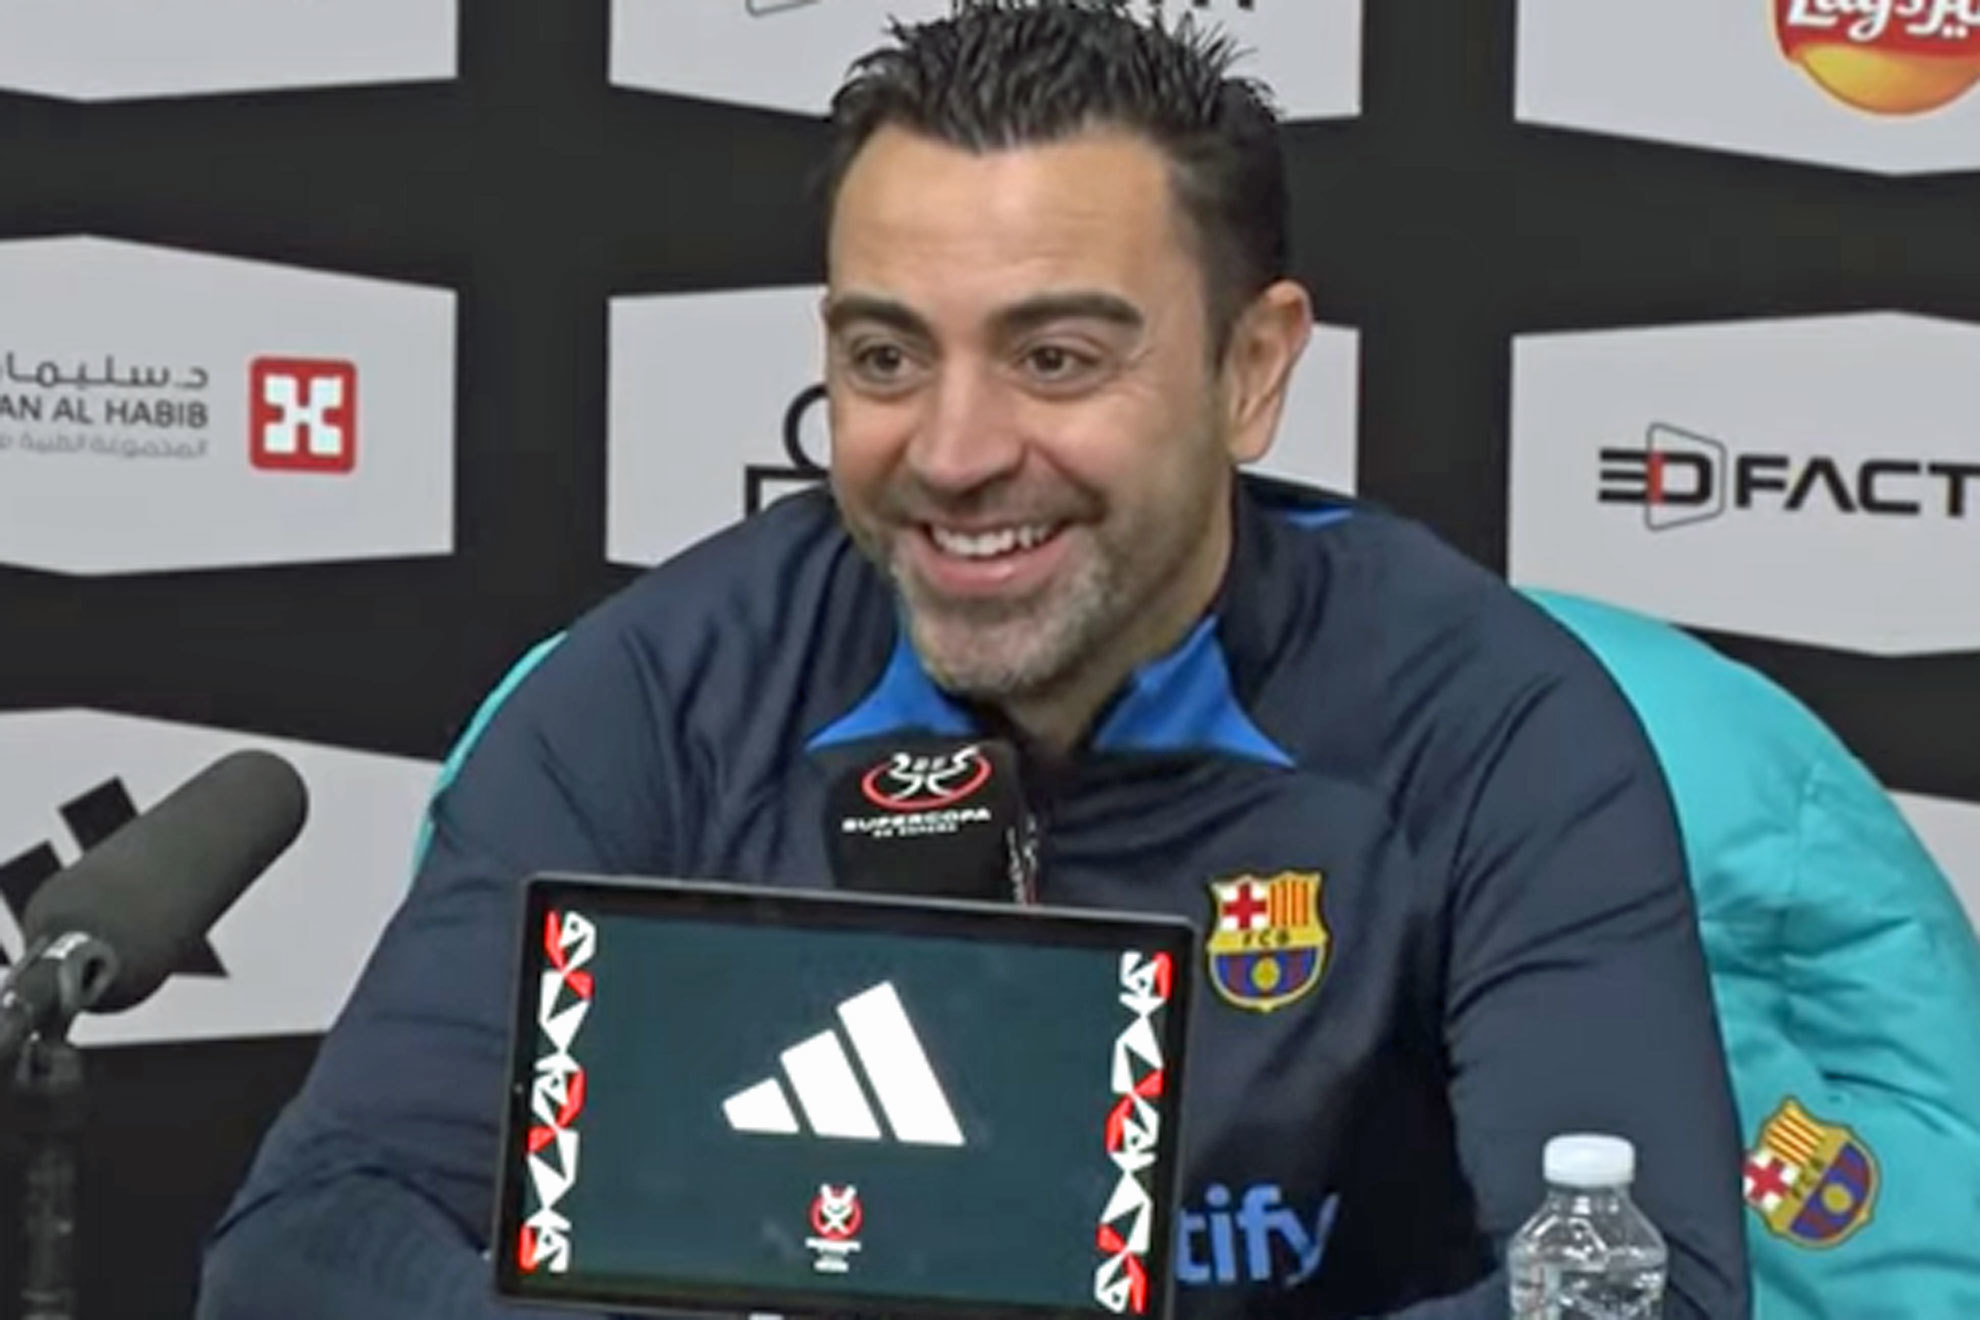 Xavi reacciona a los datos apabullantes de Ancelotti en finales: "Anda que me das esperanzas..."